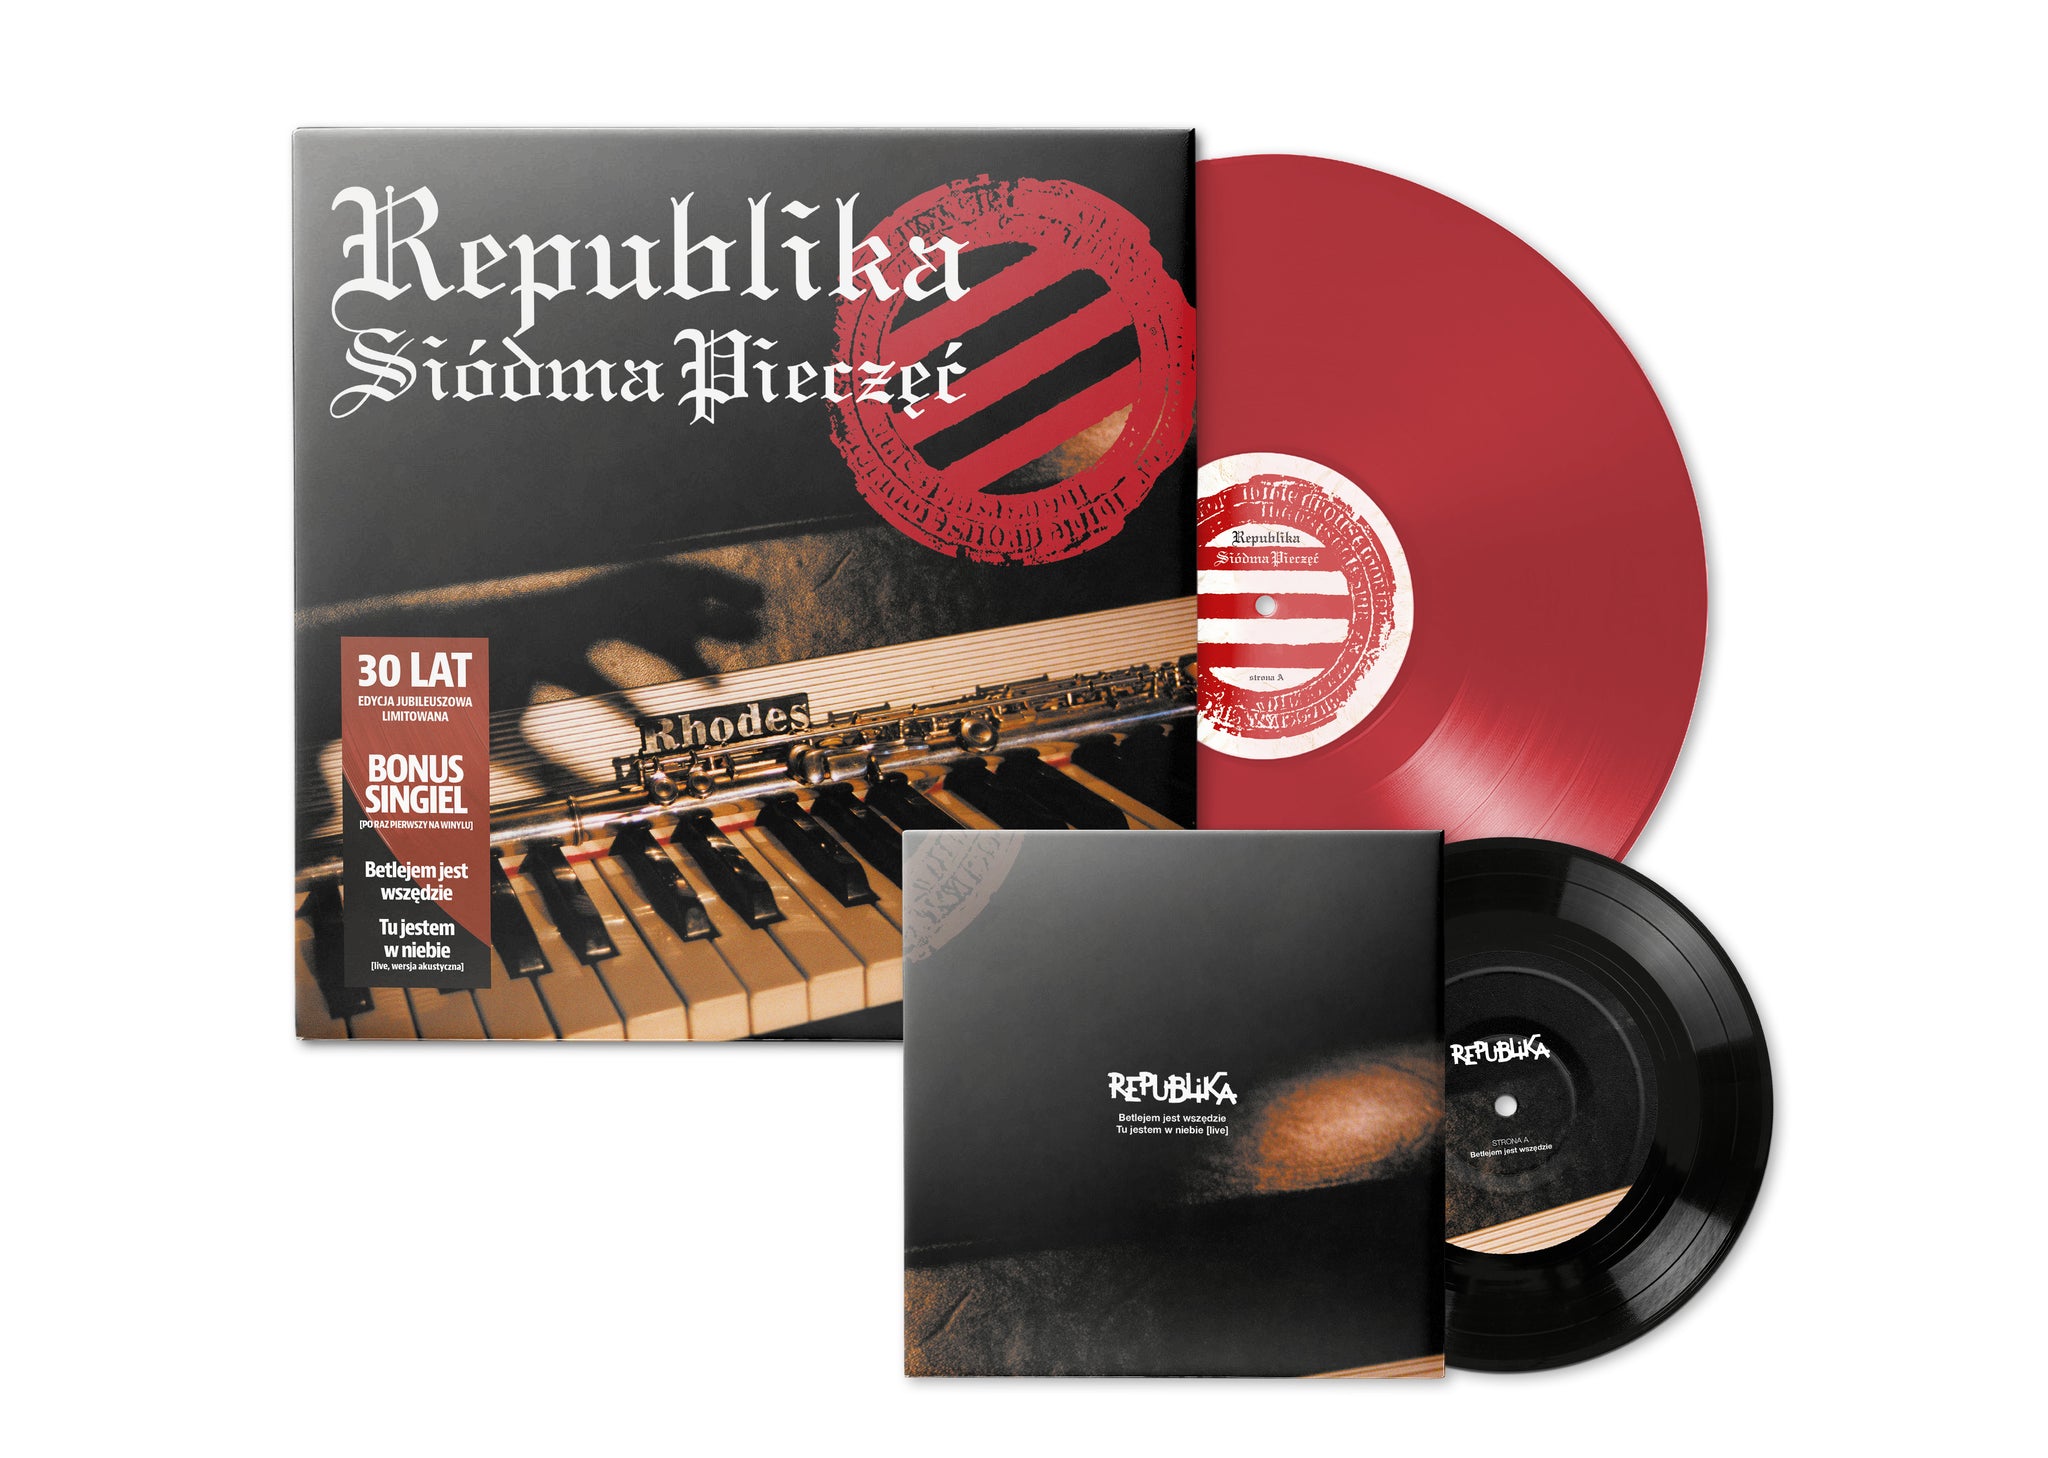 Siódma pieczęć (wydanie jubileuszowe) LP + SP 7" (Red Winyl)